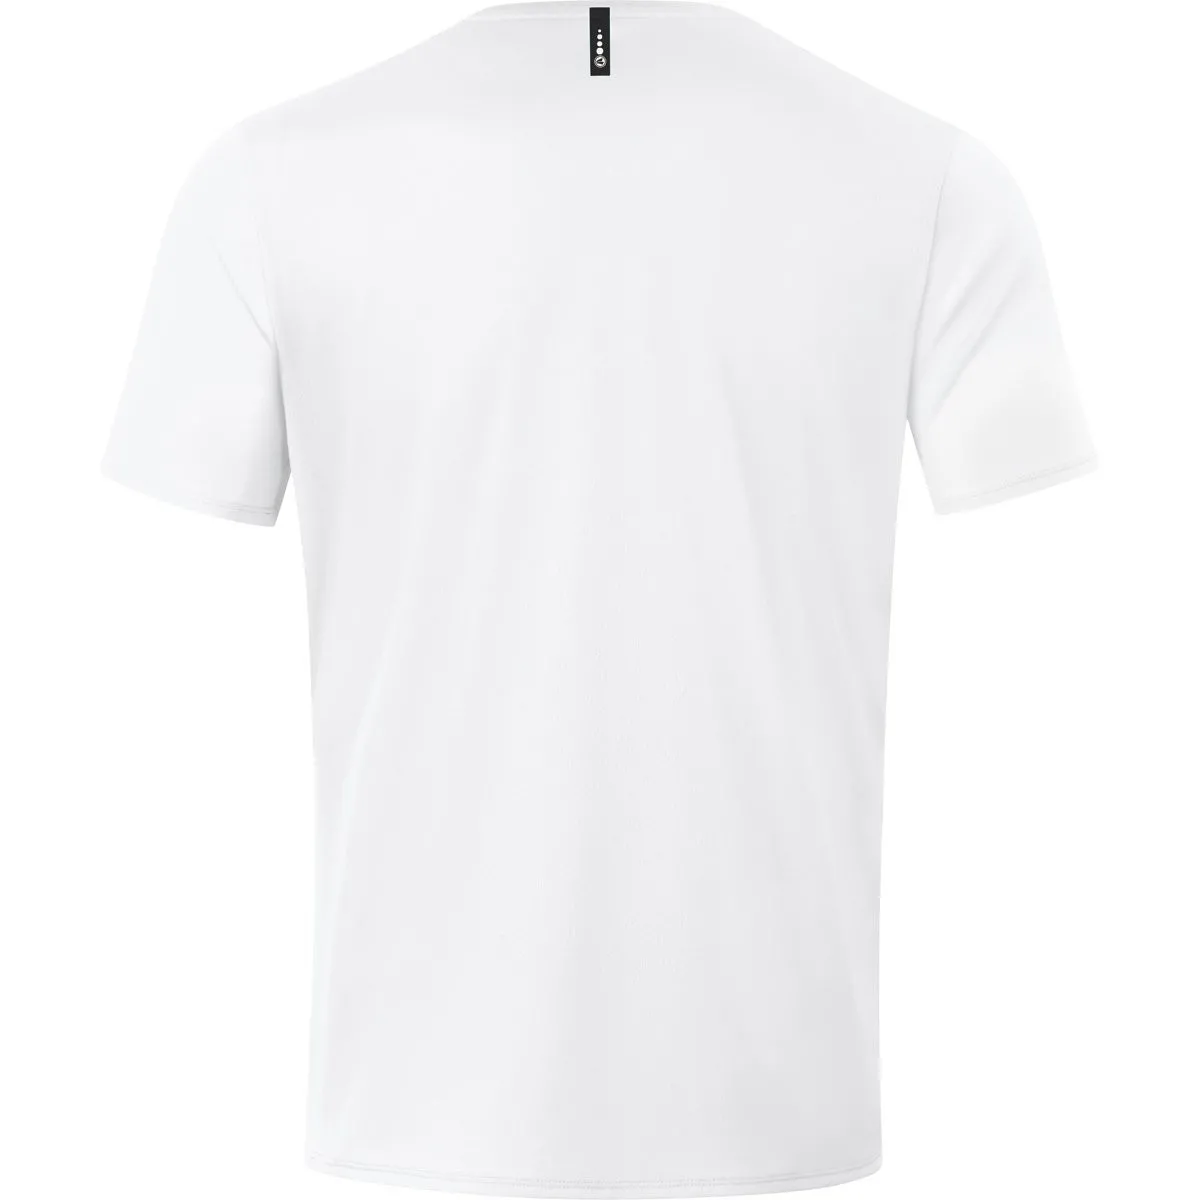 Jako T-Shirt Champ 2.0 dunkel weiß für Damen, Herren und Kinder